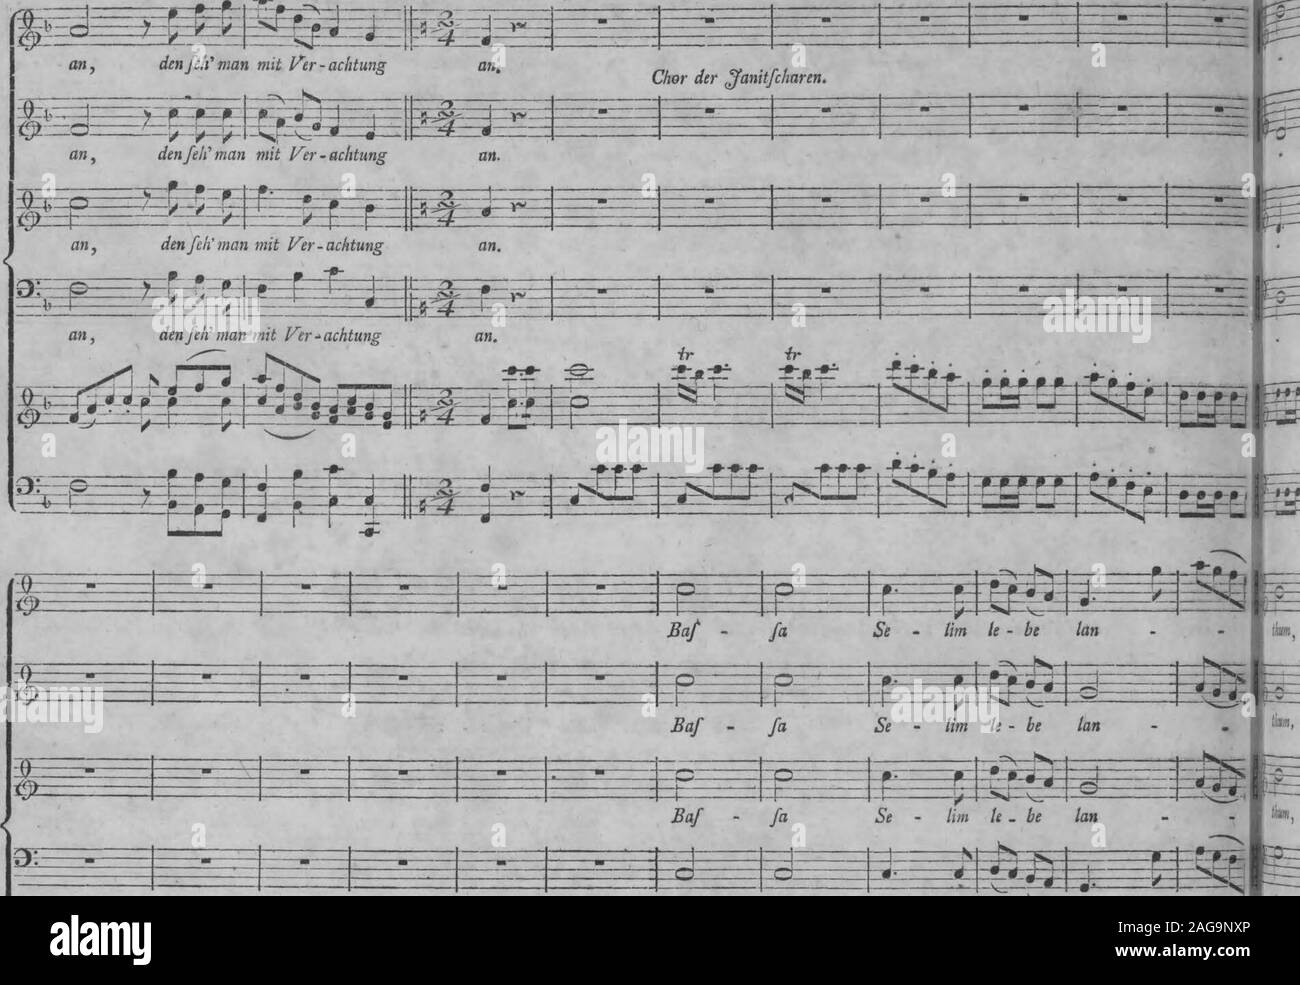 . Die Entfuhrung aus dem Serail : ein komisches Singspiel in drey Aufzugen (1796). s^Ü^üüHÜ kann, den/eh n ^ I / -0--£9- .7*- -0- -*- -fS- -®- | I | 1&gt; Mozart, Entführ, ans dem Serail, =5^= 150 Allegro vivace.. Baf fa Se - lim le - be tan Stock Photo